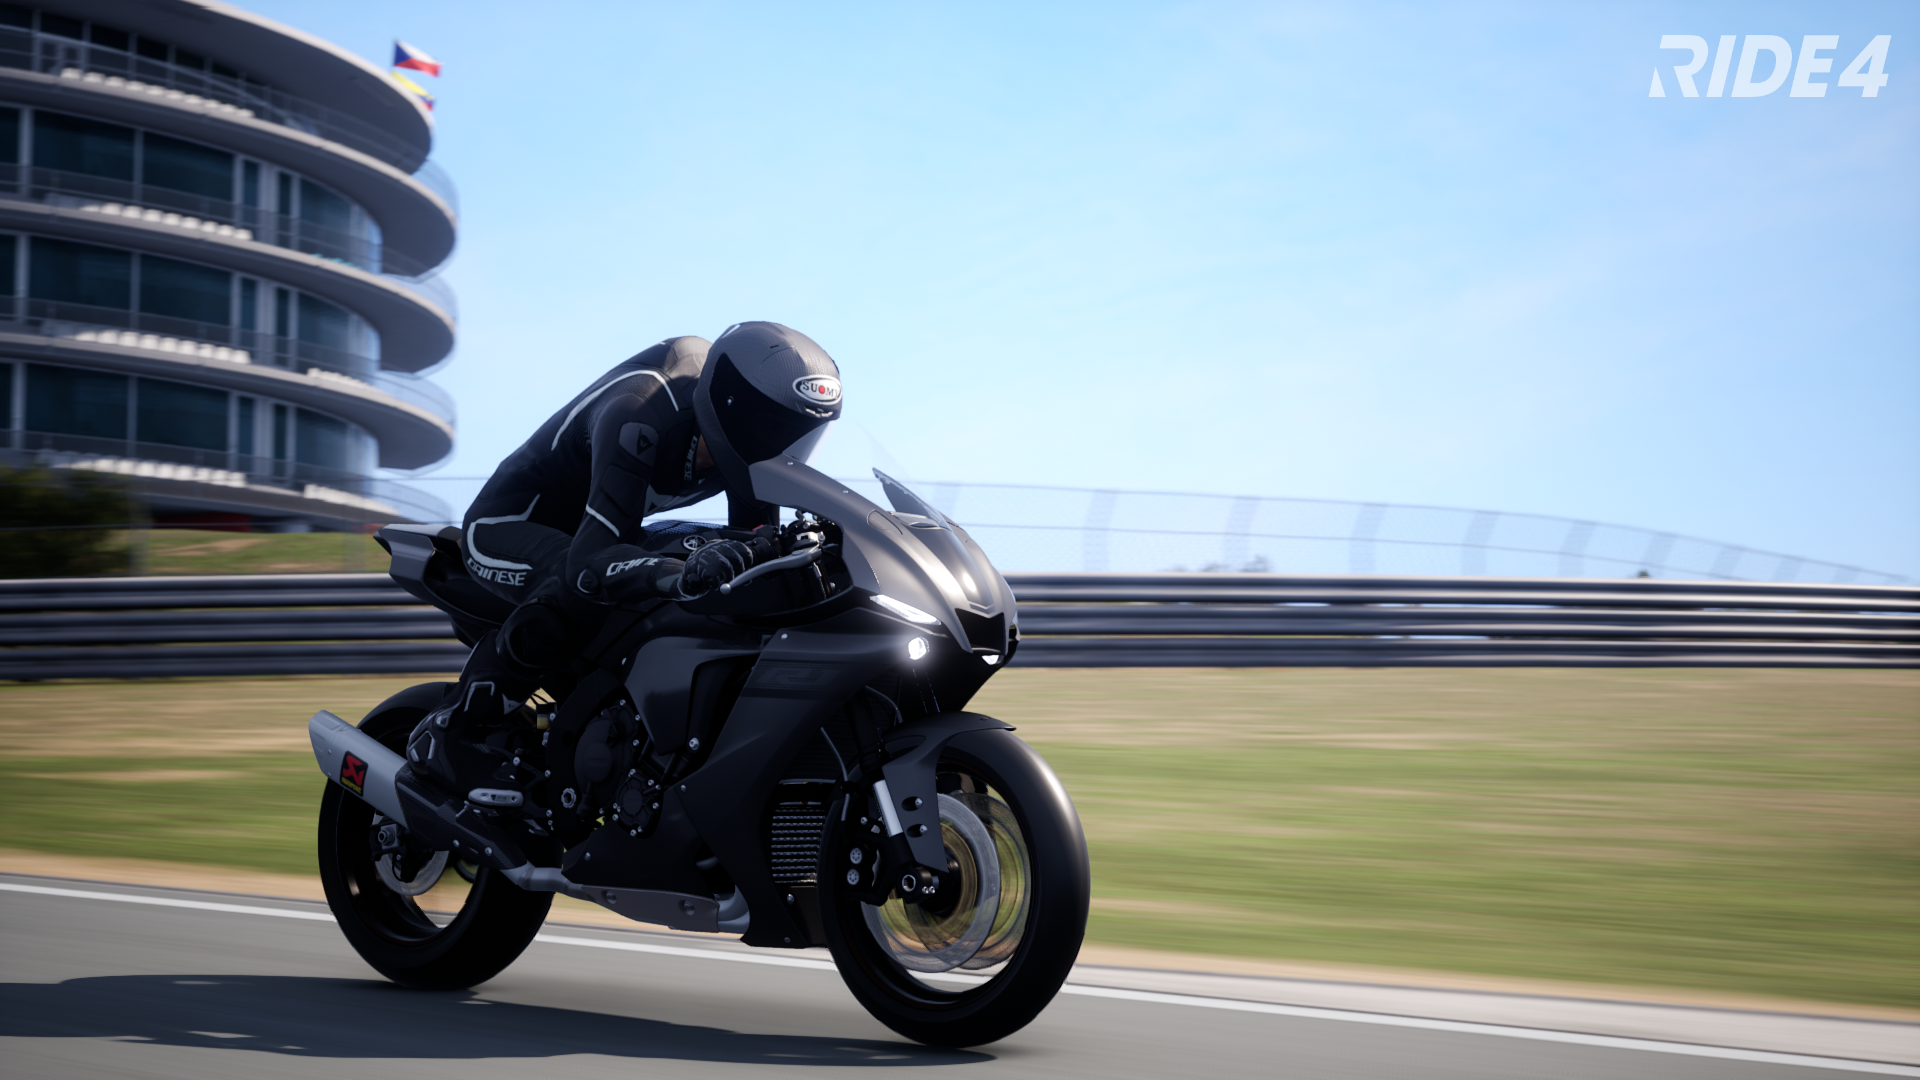 General 1920x1080 motorcycle Racing Motorcycle vehicle headlights road race tracks helmet video games